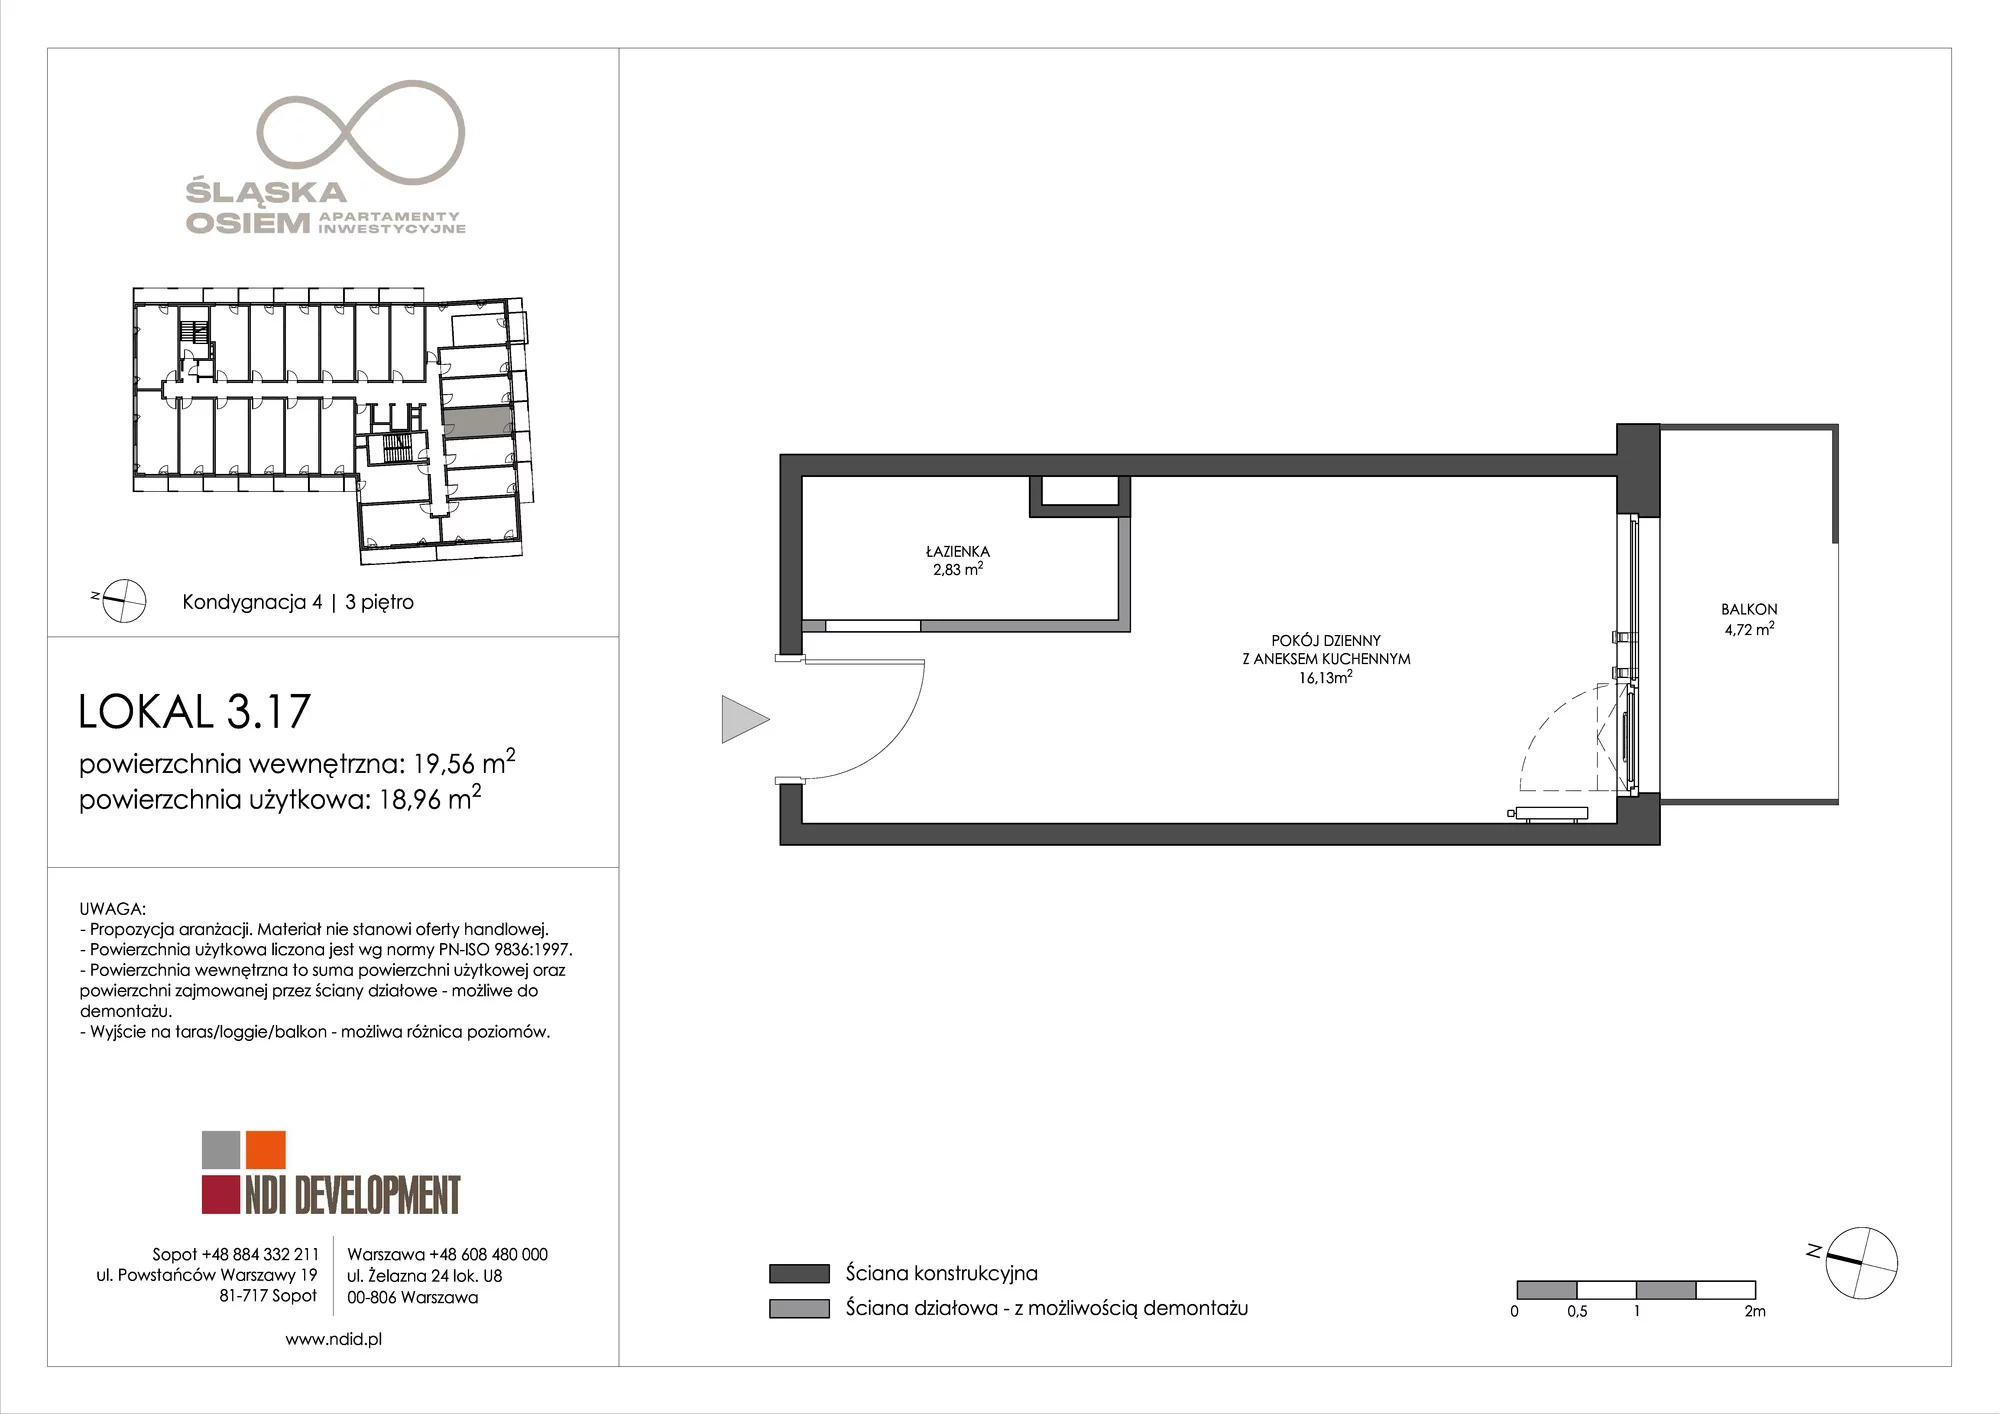 Apartament inwestycyjny 19,56 m², piętro 3, oferta nr 3.17, Śląska Osiem, Gdańsk, Przymorze, ul. Śląska 8